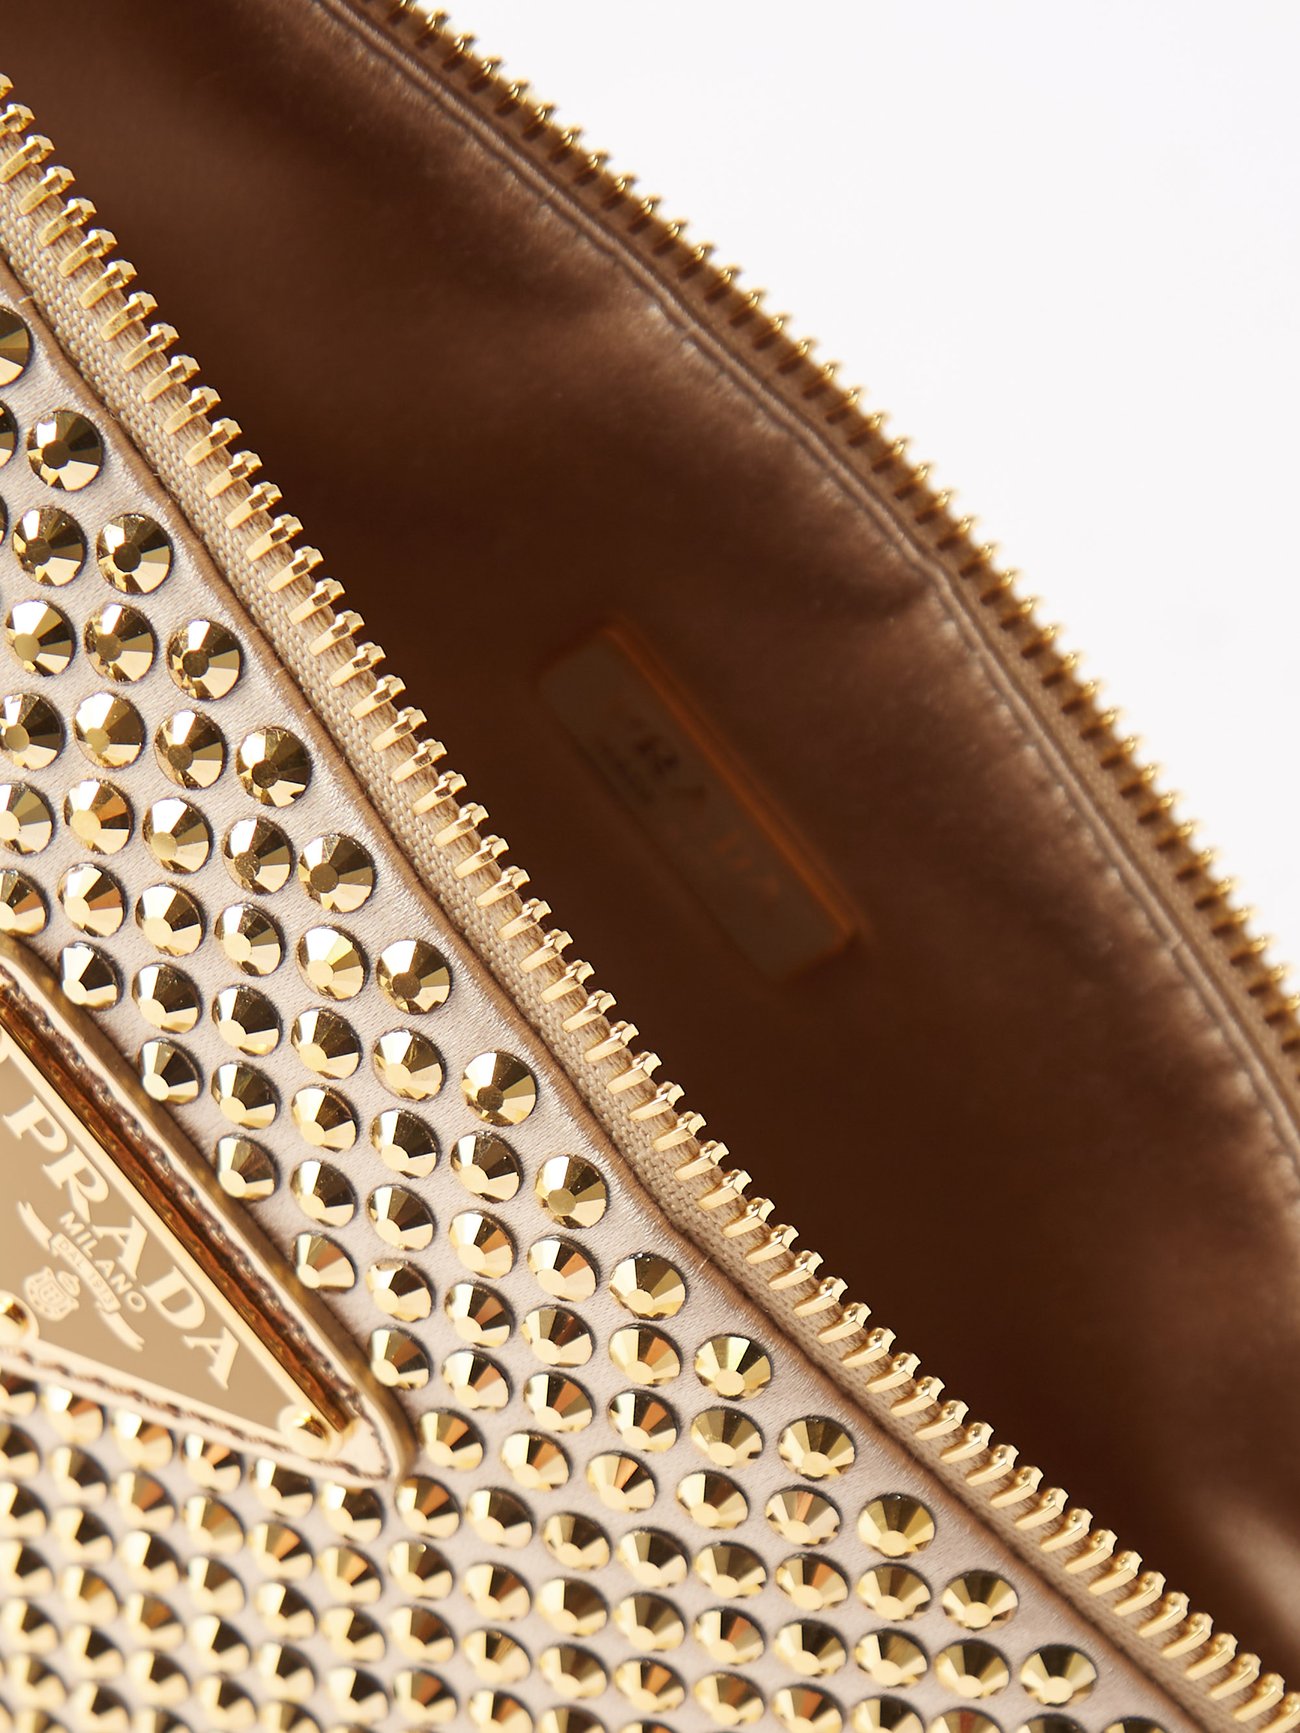 Gold Crystal-embellished satin shoulder bag, Prada